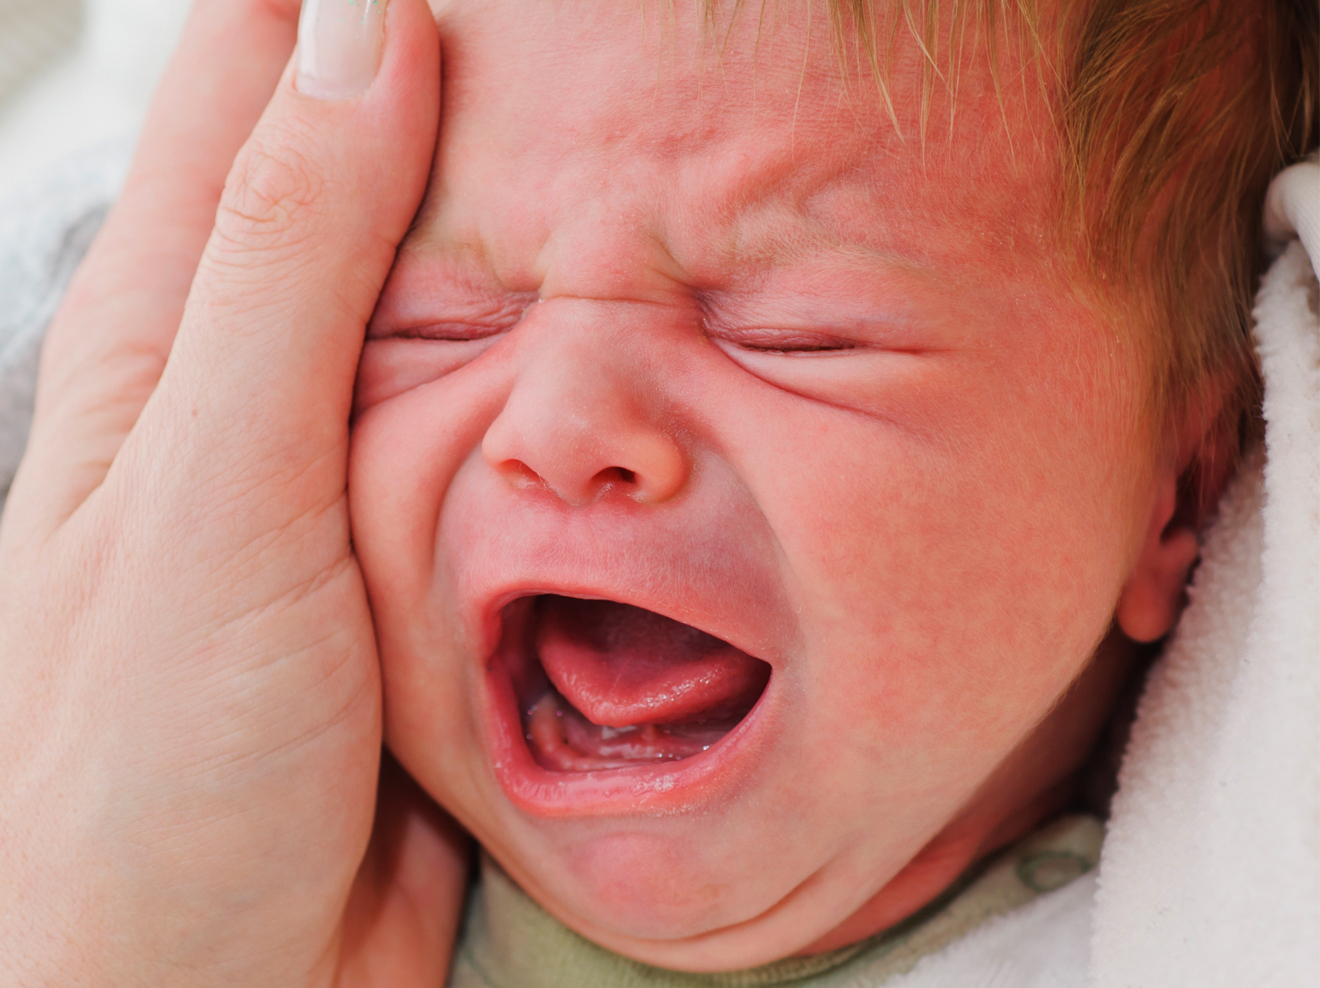 Baby Schreit? Was Die 5 Schreiarten Bedeuten | Wunderweib mit Baby Schreit Plötzlich Schrill